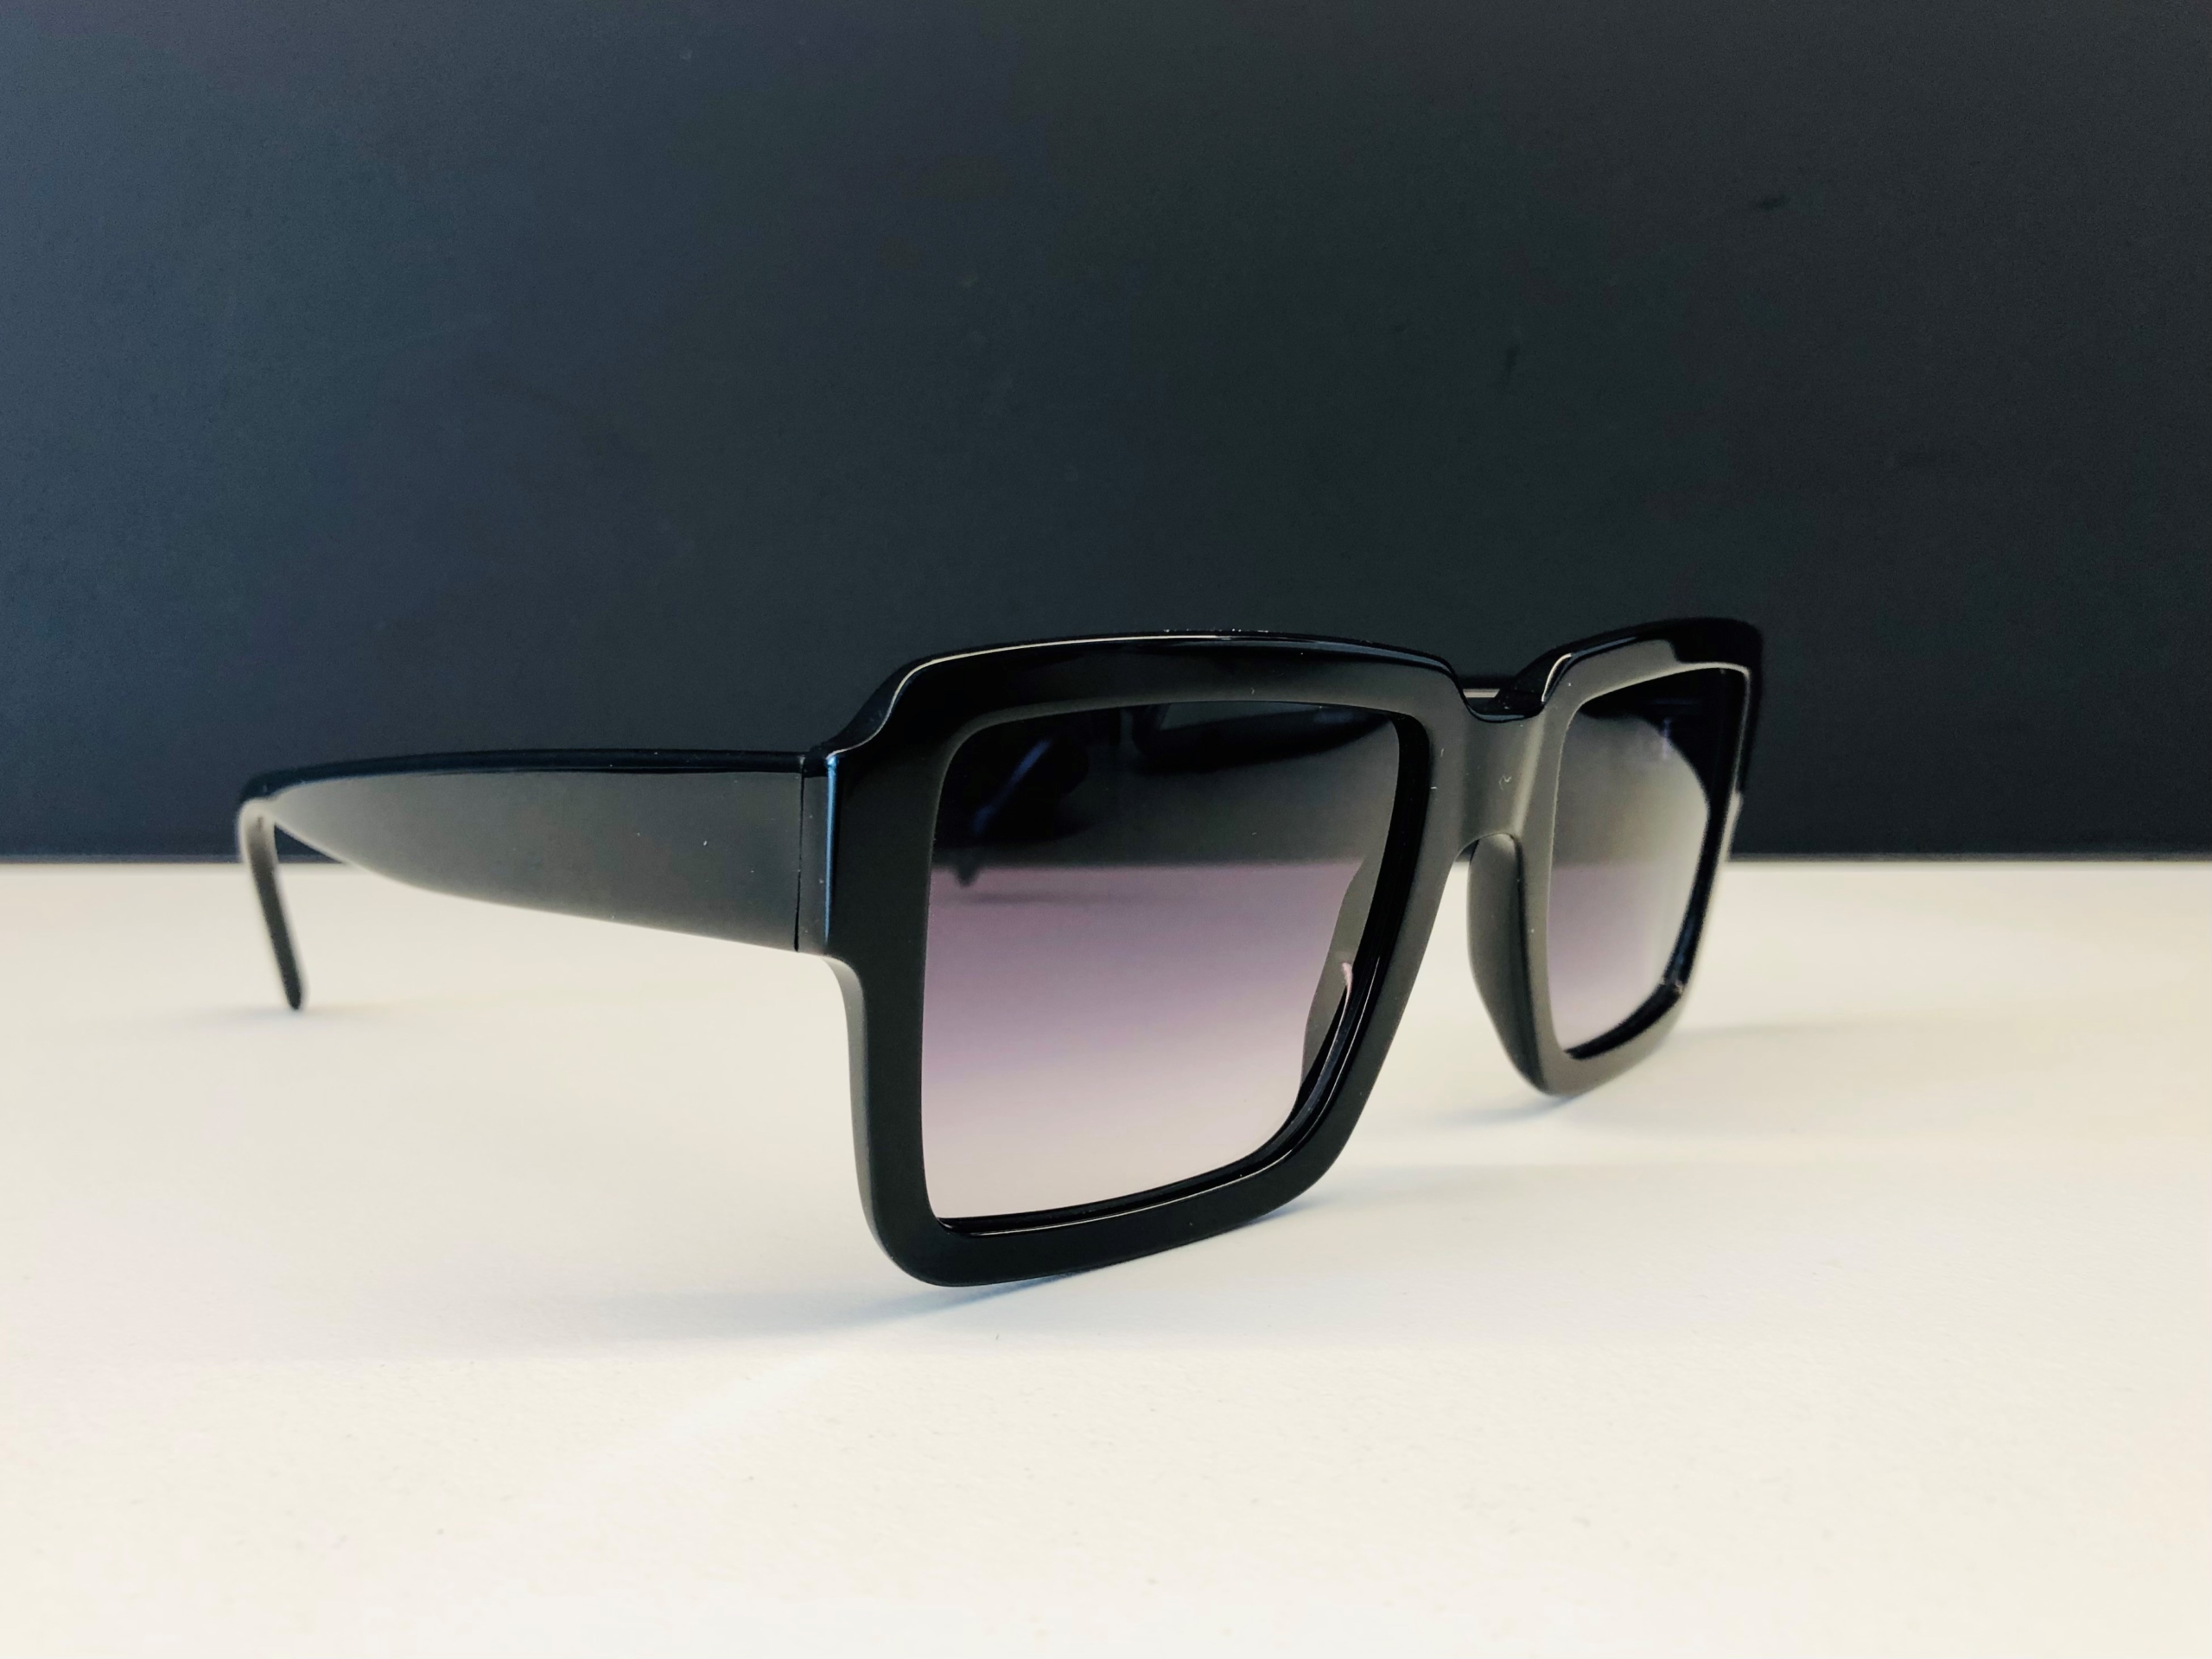 Sonnenbrillen Trends 2022-Statement-Augensache-Optiker-Friedberg-Augsburg-Brille-Sonnenbrille-Kontaktlinse